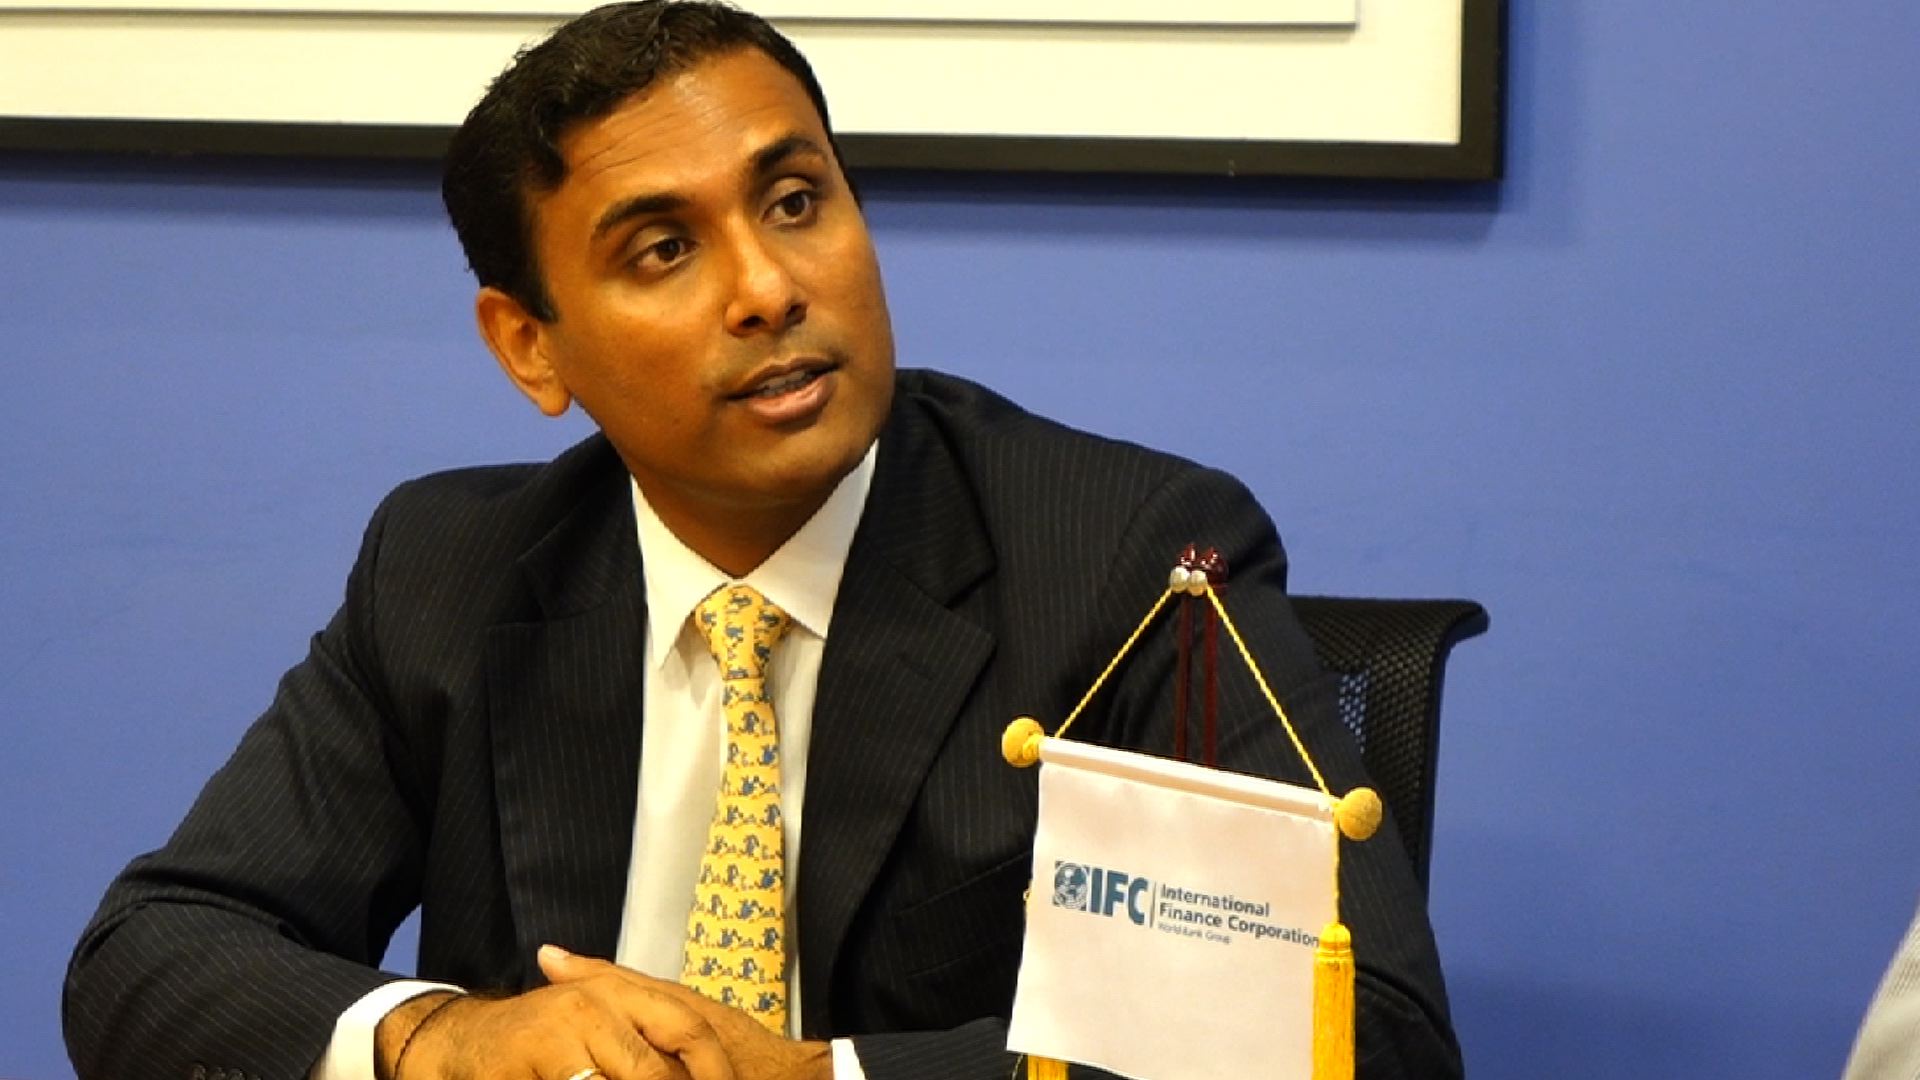 DVB talks to Vikram Kumar, IFC